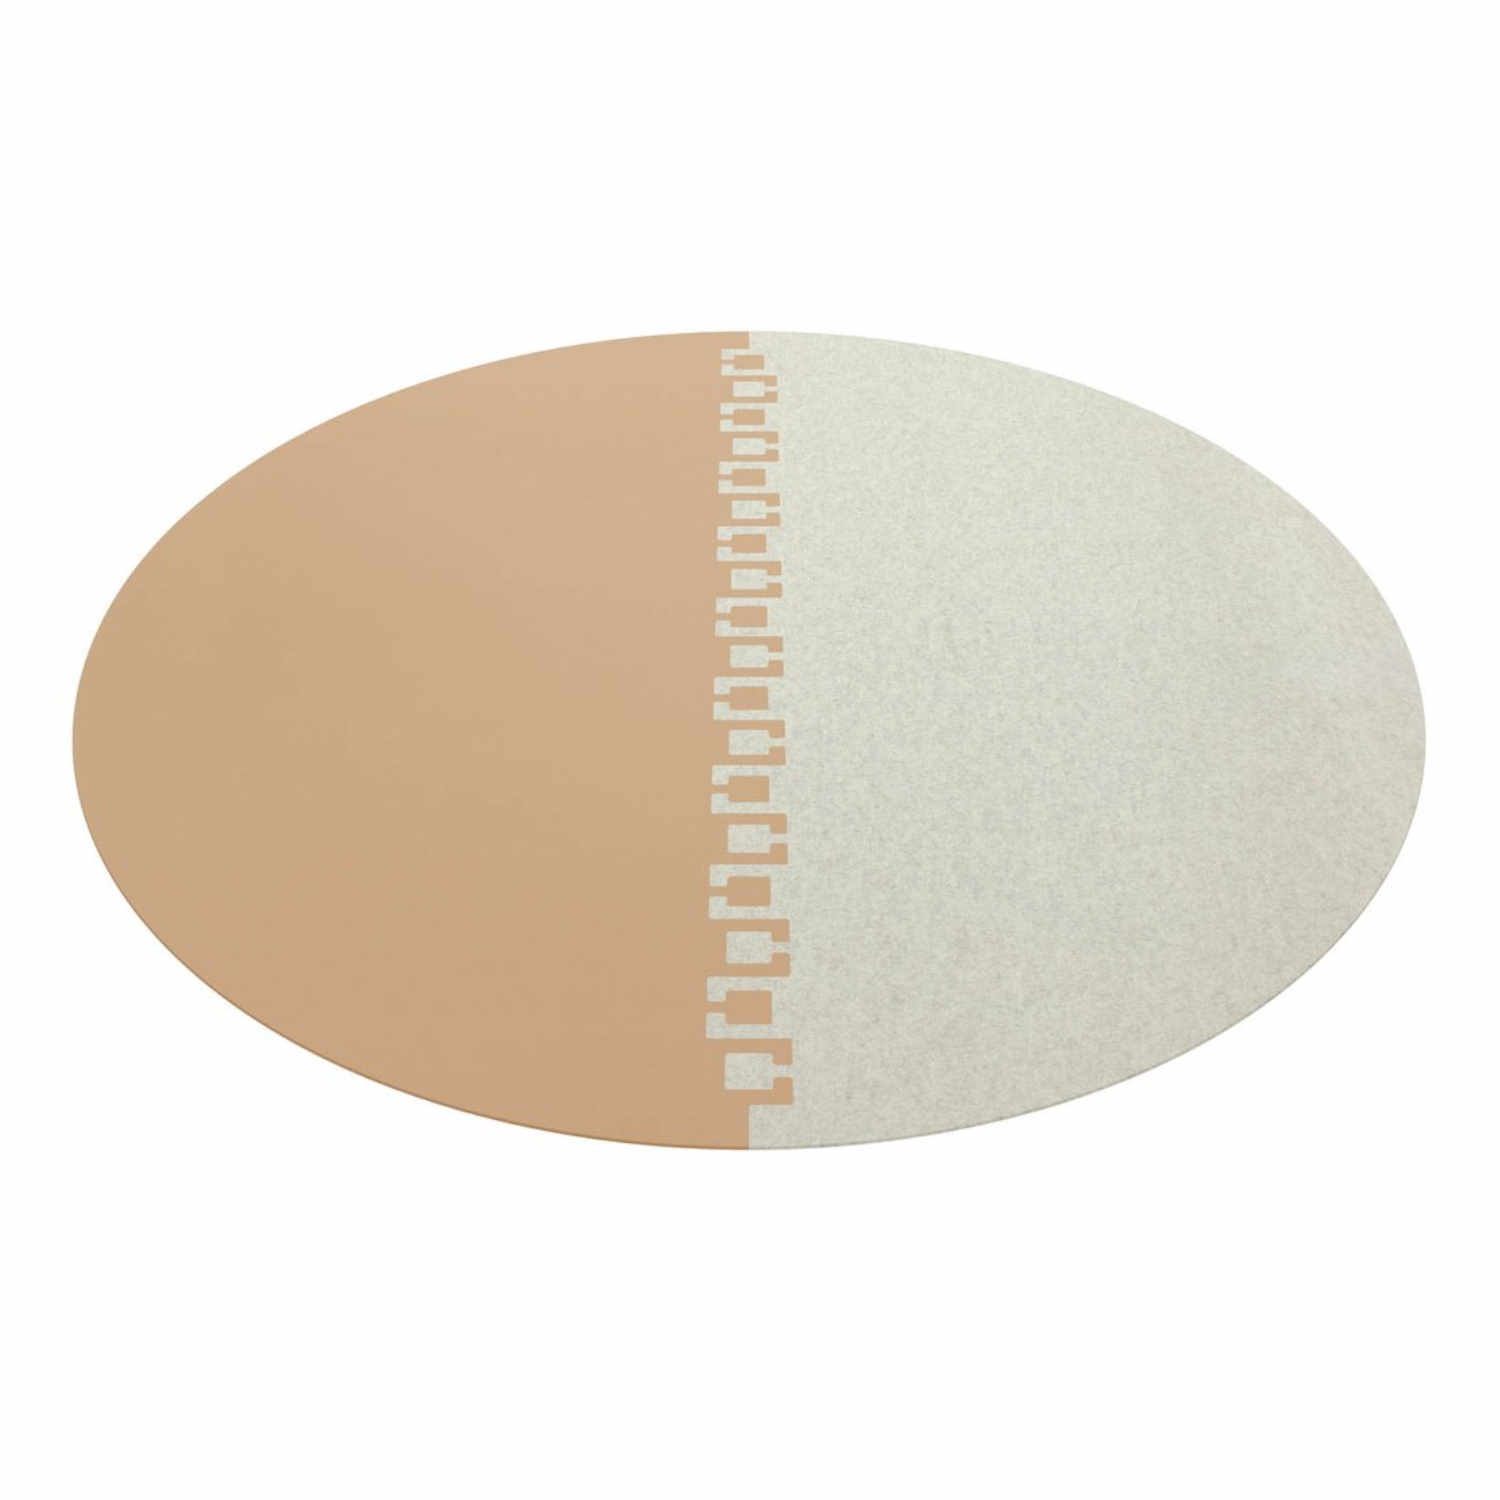 Twice rund 2-teilig Teppich, Farbe maigrün, Farbe 2 marmor 06, Durchmesser 360 cm von HEY-SIGN